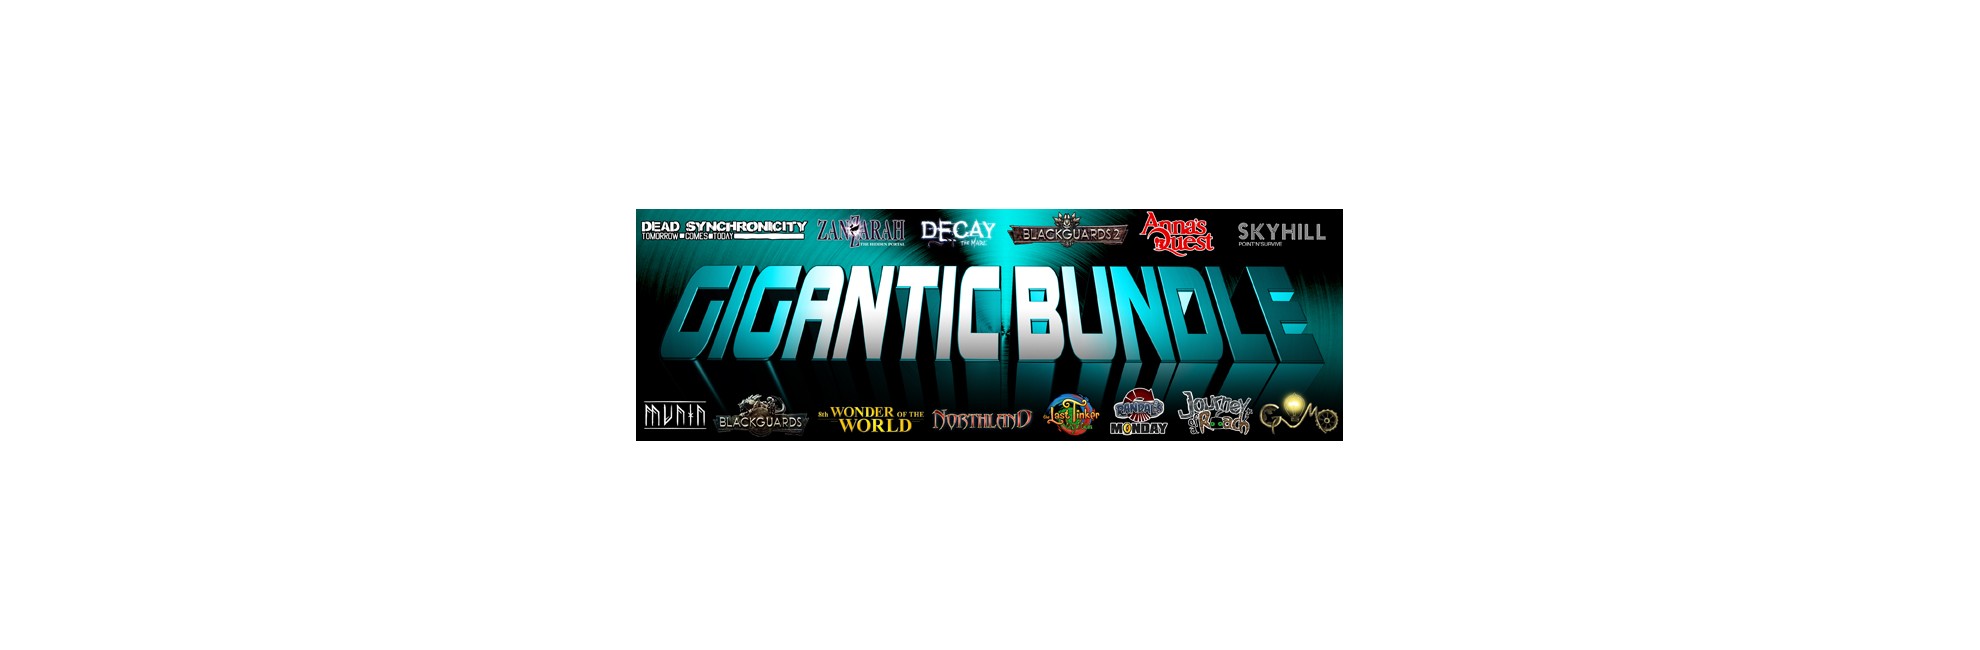 Daedalic - Gigantic Bundle